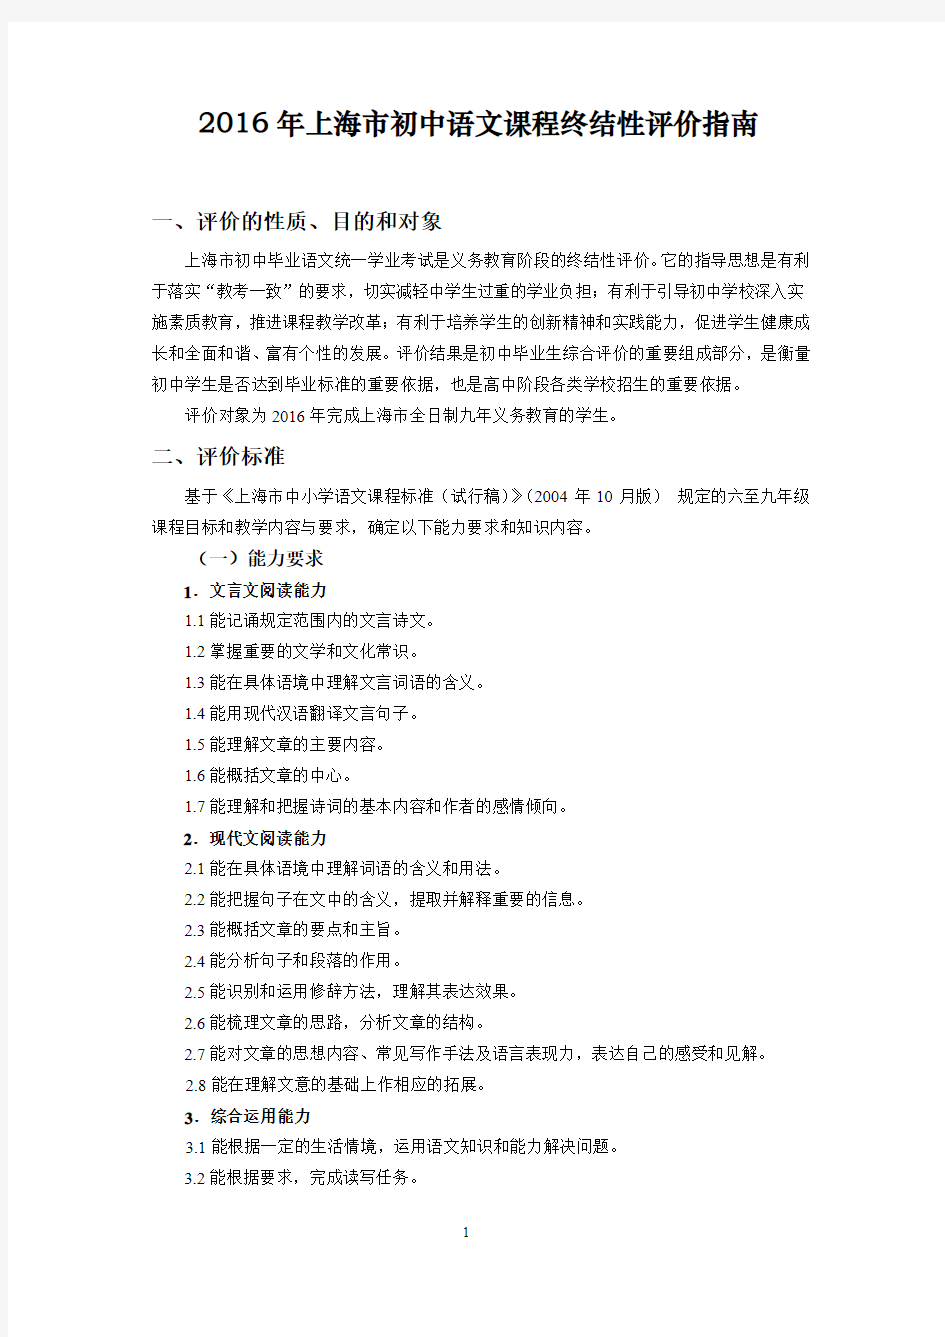 2016年上海市初中语文考纲(今年叫：课程终结性评价指南)【官方原版】